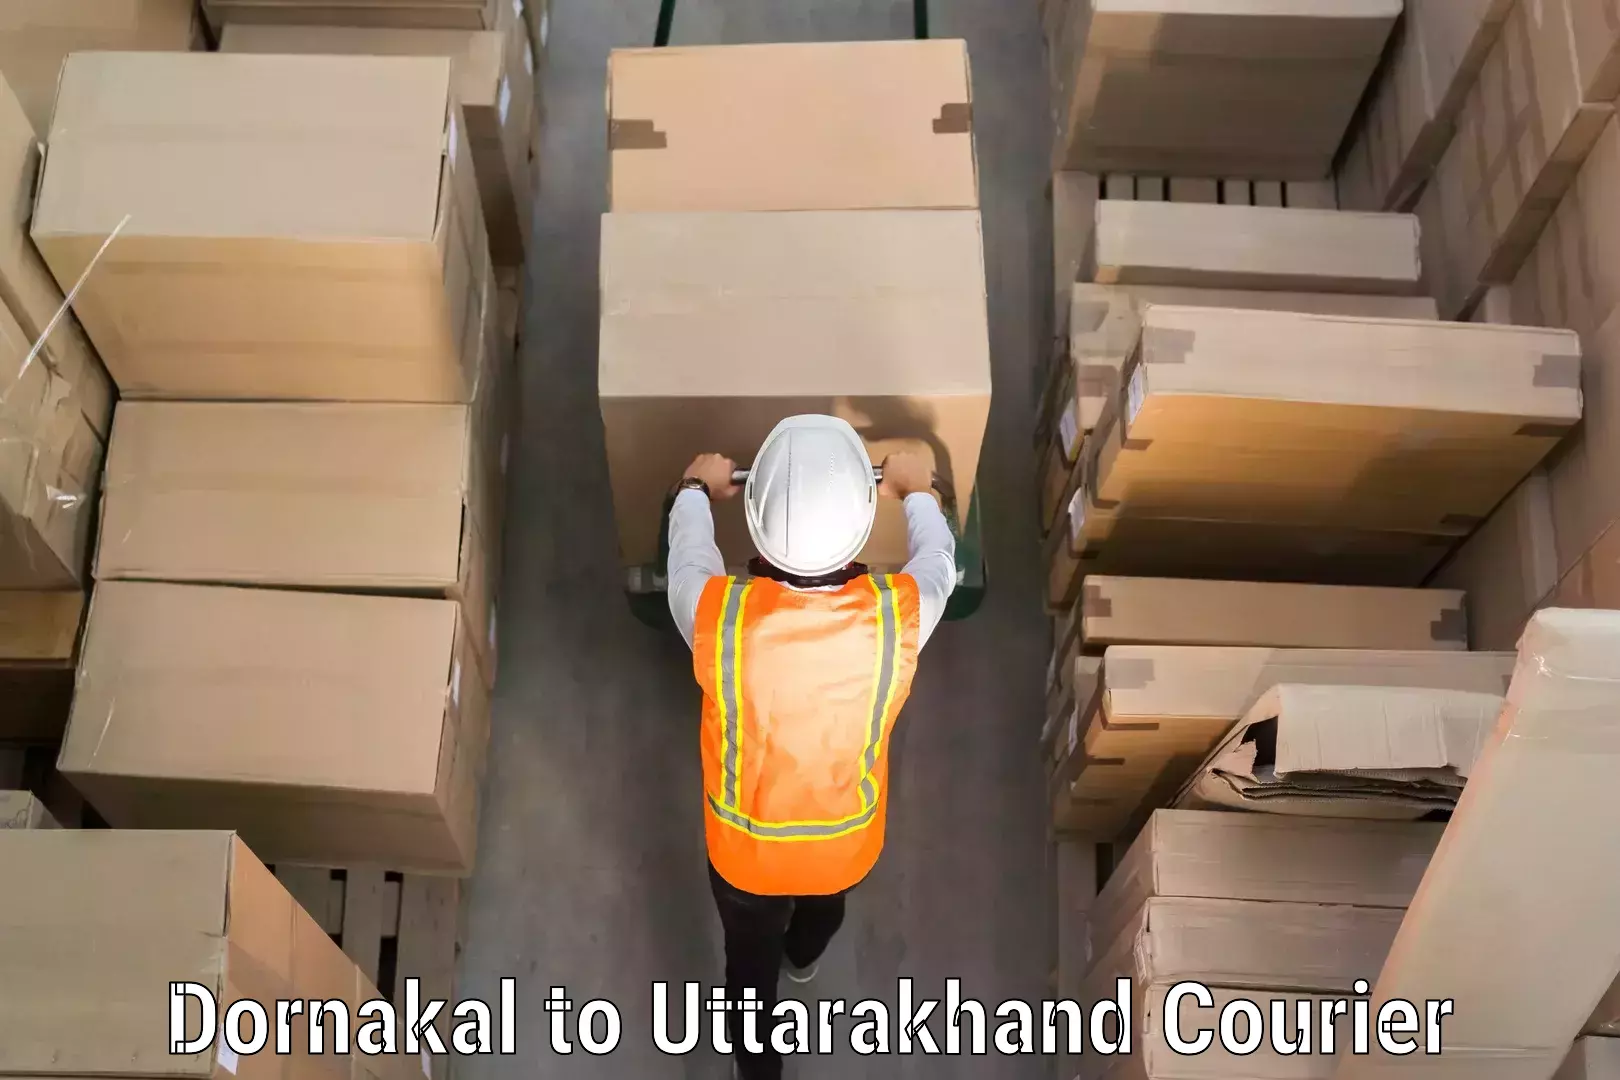 Comprehensive baggage service Dornakal to Bhimtal